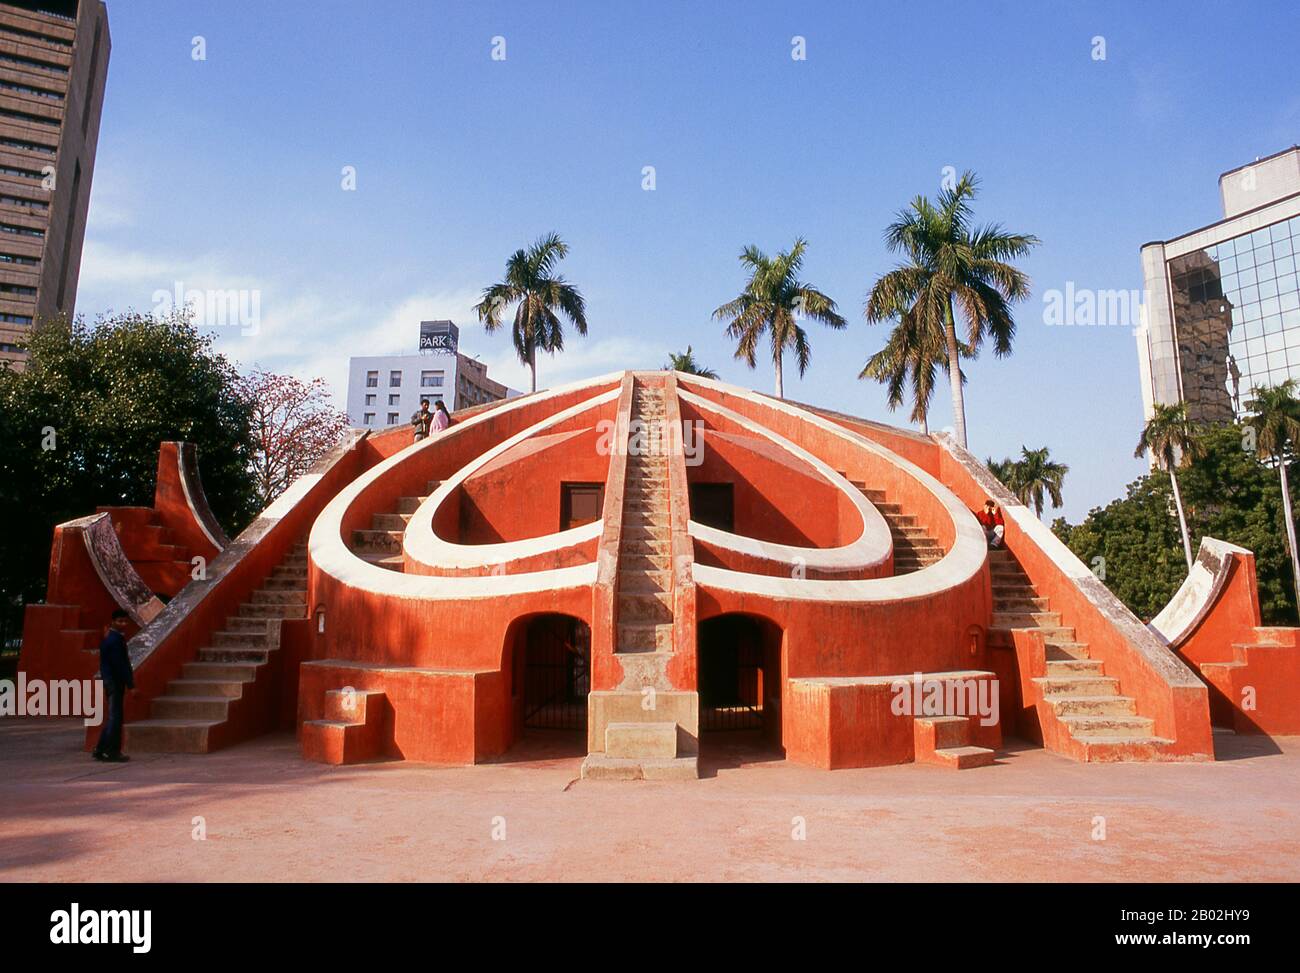 Il Jantar Mantar è una collezione di strumenti astronomici architettonici, costruito nel 1724 da Maharaja Sawai Jai Singh che era un re Rajput. L'osservatorio è costituito da tredici principali dispositivi geometrici per misurare il tempo, predire eclissi, tracciare la posizione delle stelle come orbite della terra intorno al sole, accertare le declinazioni dei pianeti, e determinare le altitudini celesti e le relative effemeridi. Delhi è detto essere il luogo di Indraprashta, capitale dei Pandavas dell'epico indiano Mahabharata. Gli scavi hanno portato alla luce frammenti di ceramica dipinta risalente a circa 1000 a.C., tho Foto Stock